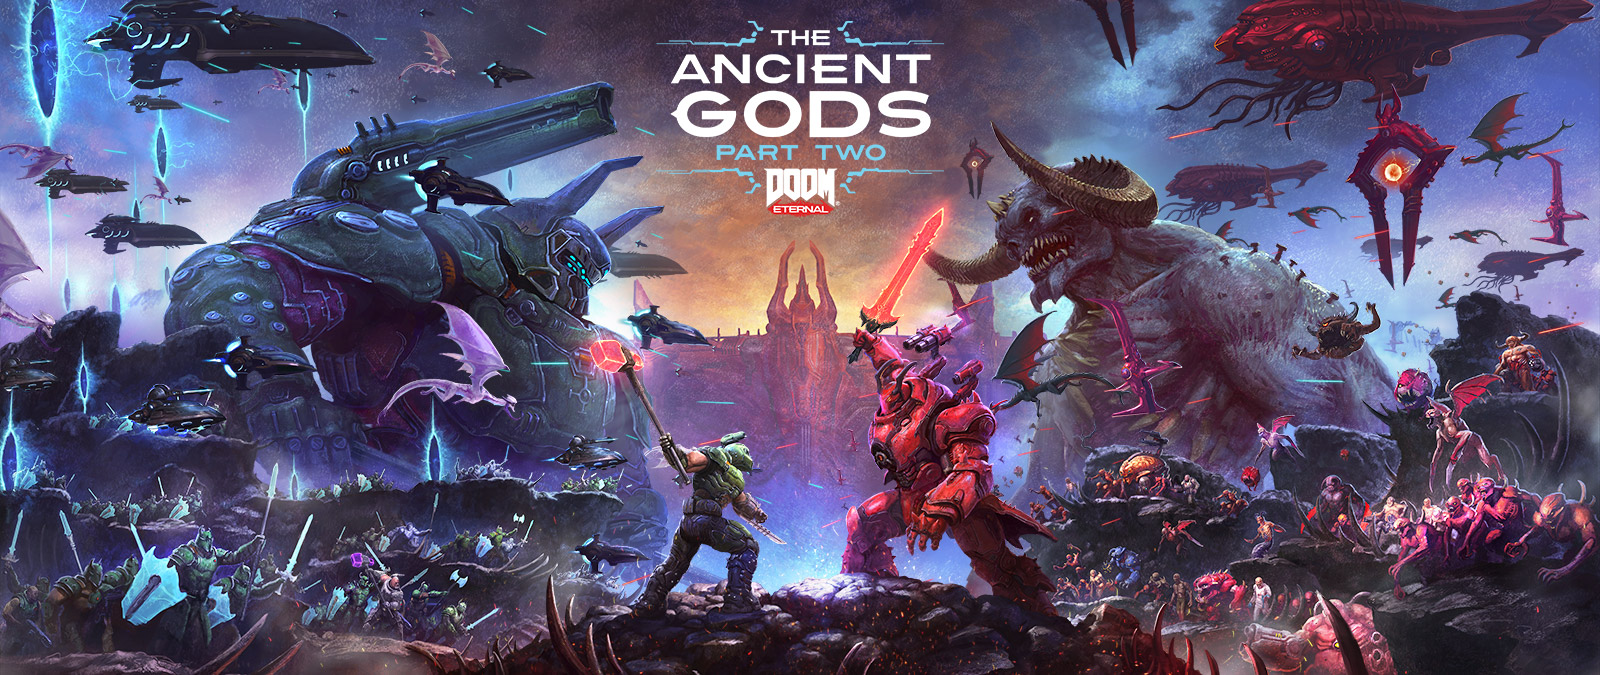 DOOM Eternal, The Ancient Gods Part Two, Une bataille épique entre Slayers et démons sur un paysage rocheux infernal. 